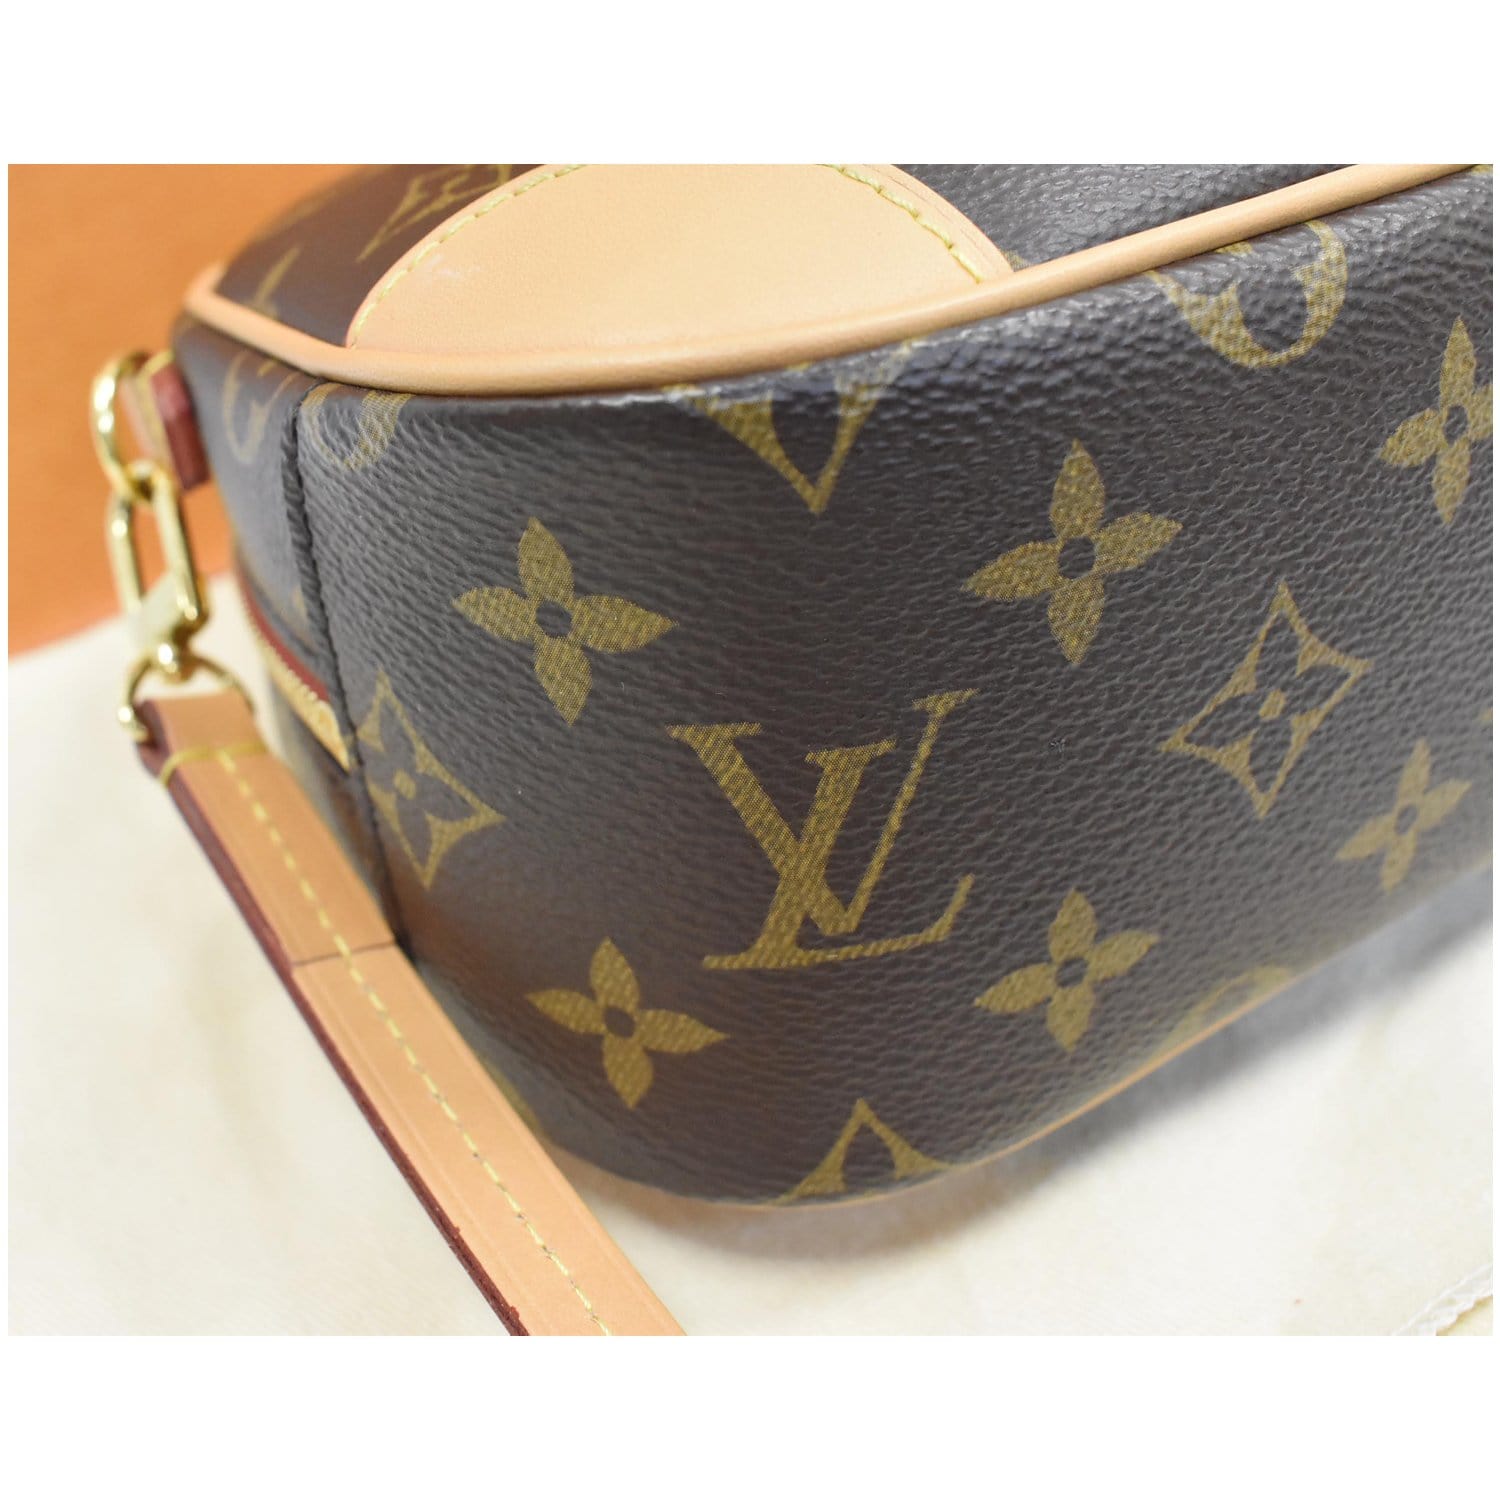 Louis Vuitton Black Jacquard Since 1854 Deauville Mini Camera Bag